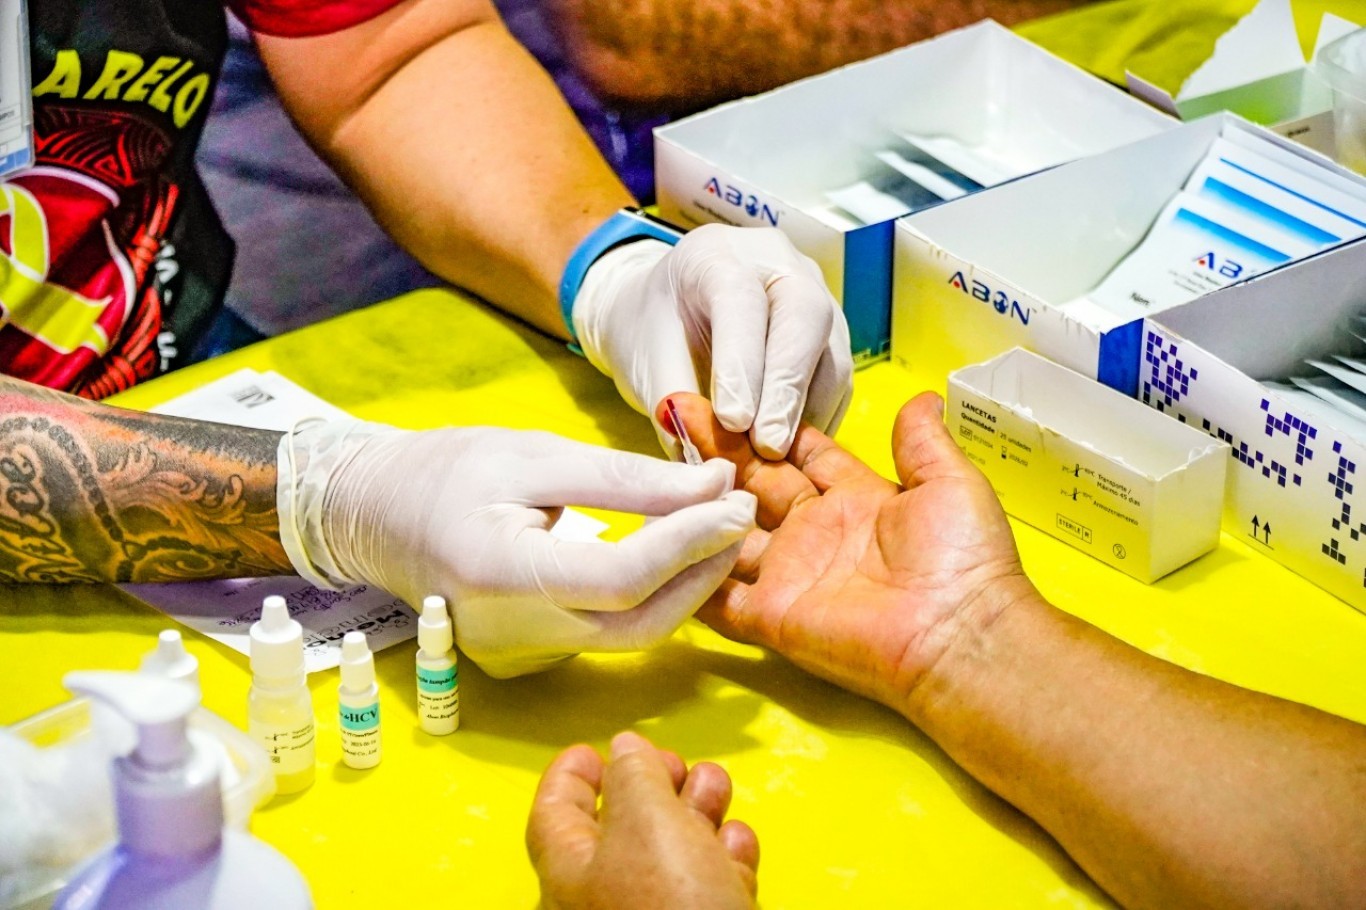 Vigilância em Saúde realiza mais de 20 exames gratuitos de doenças epidemiológicas; confira quais são